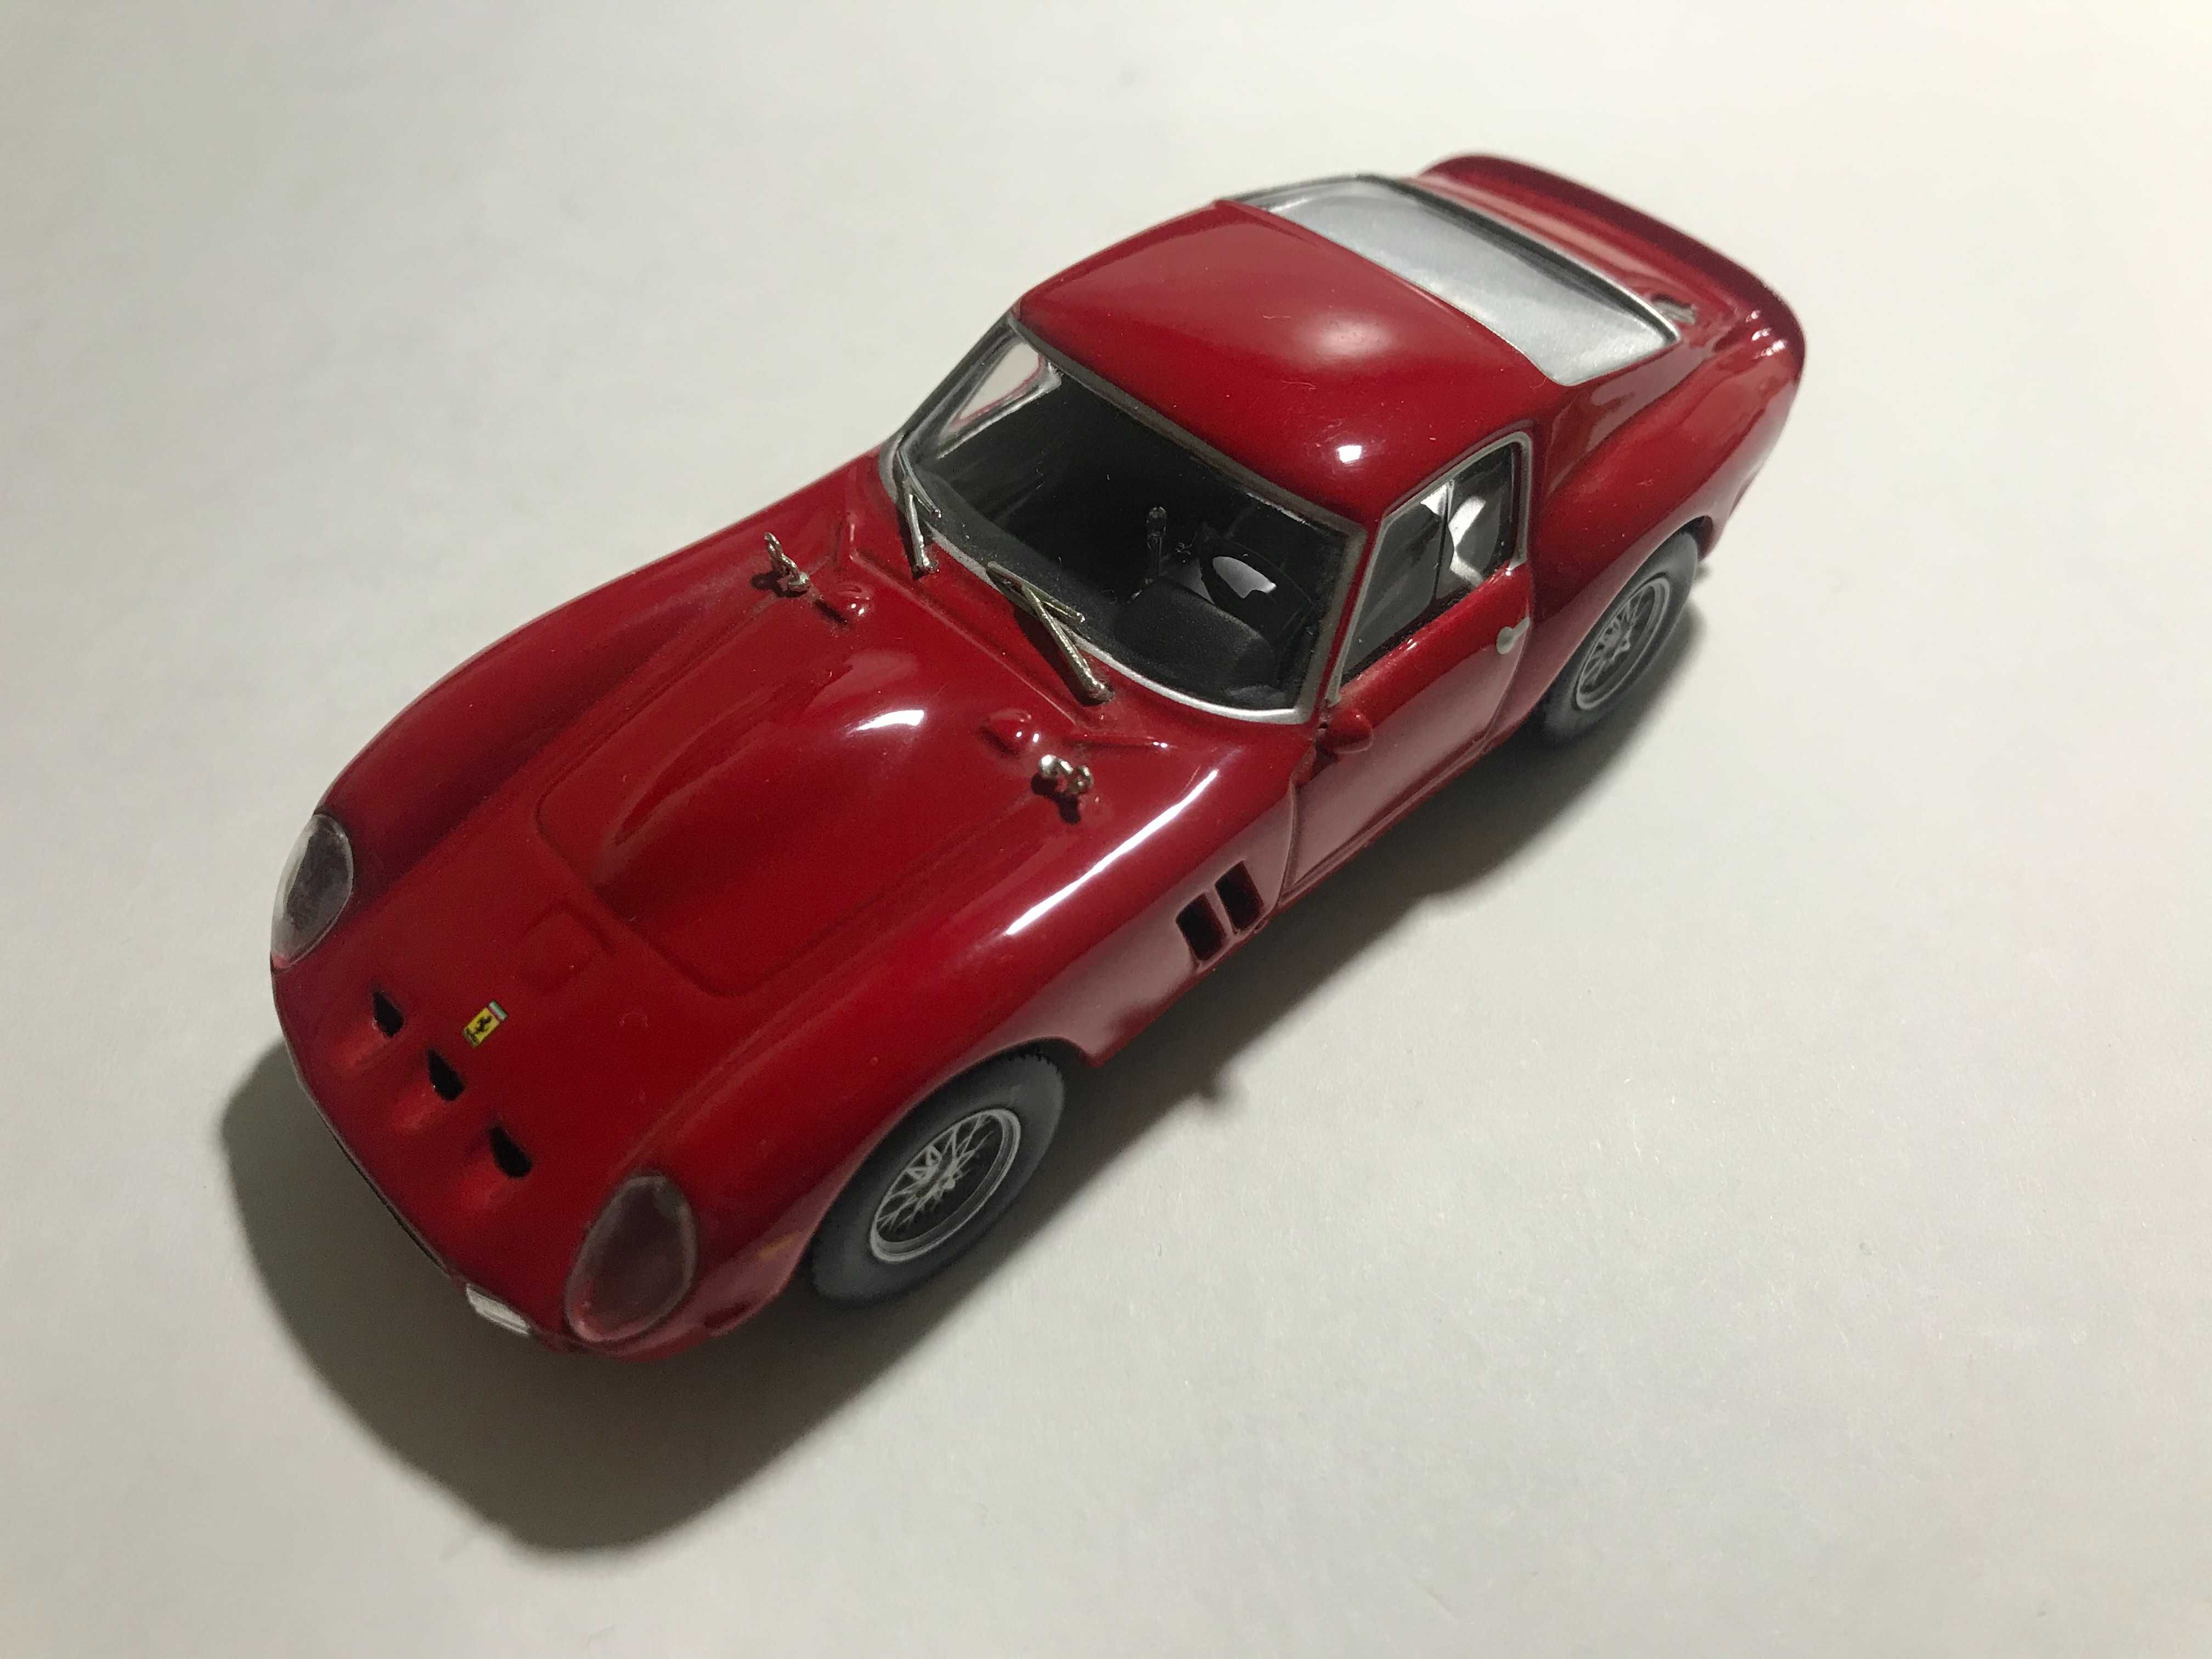 Ferrari 250 GTO 1962 (Ferrari collection) 1:43